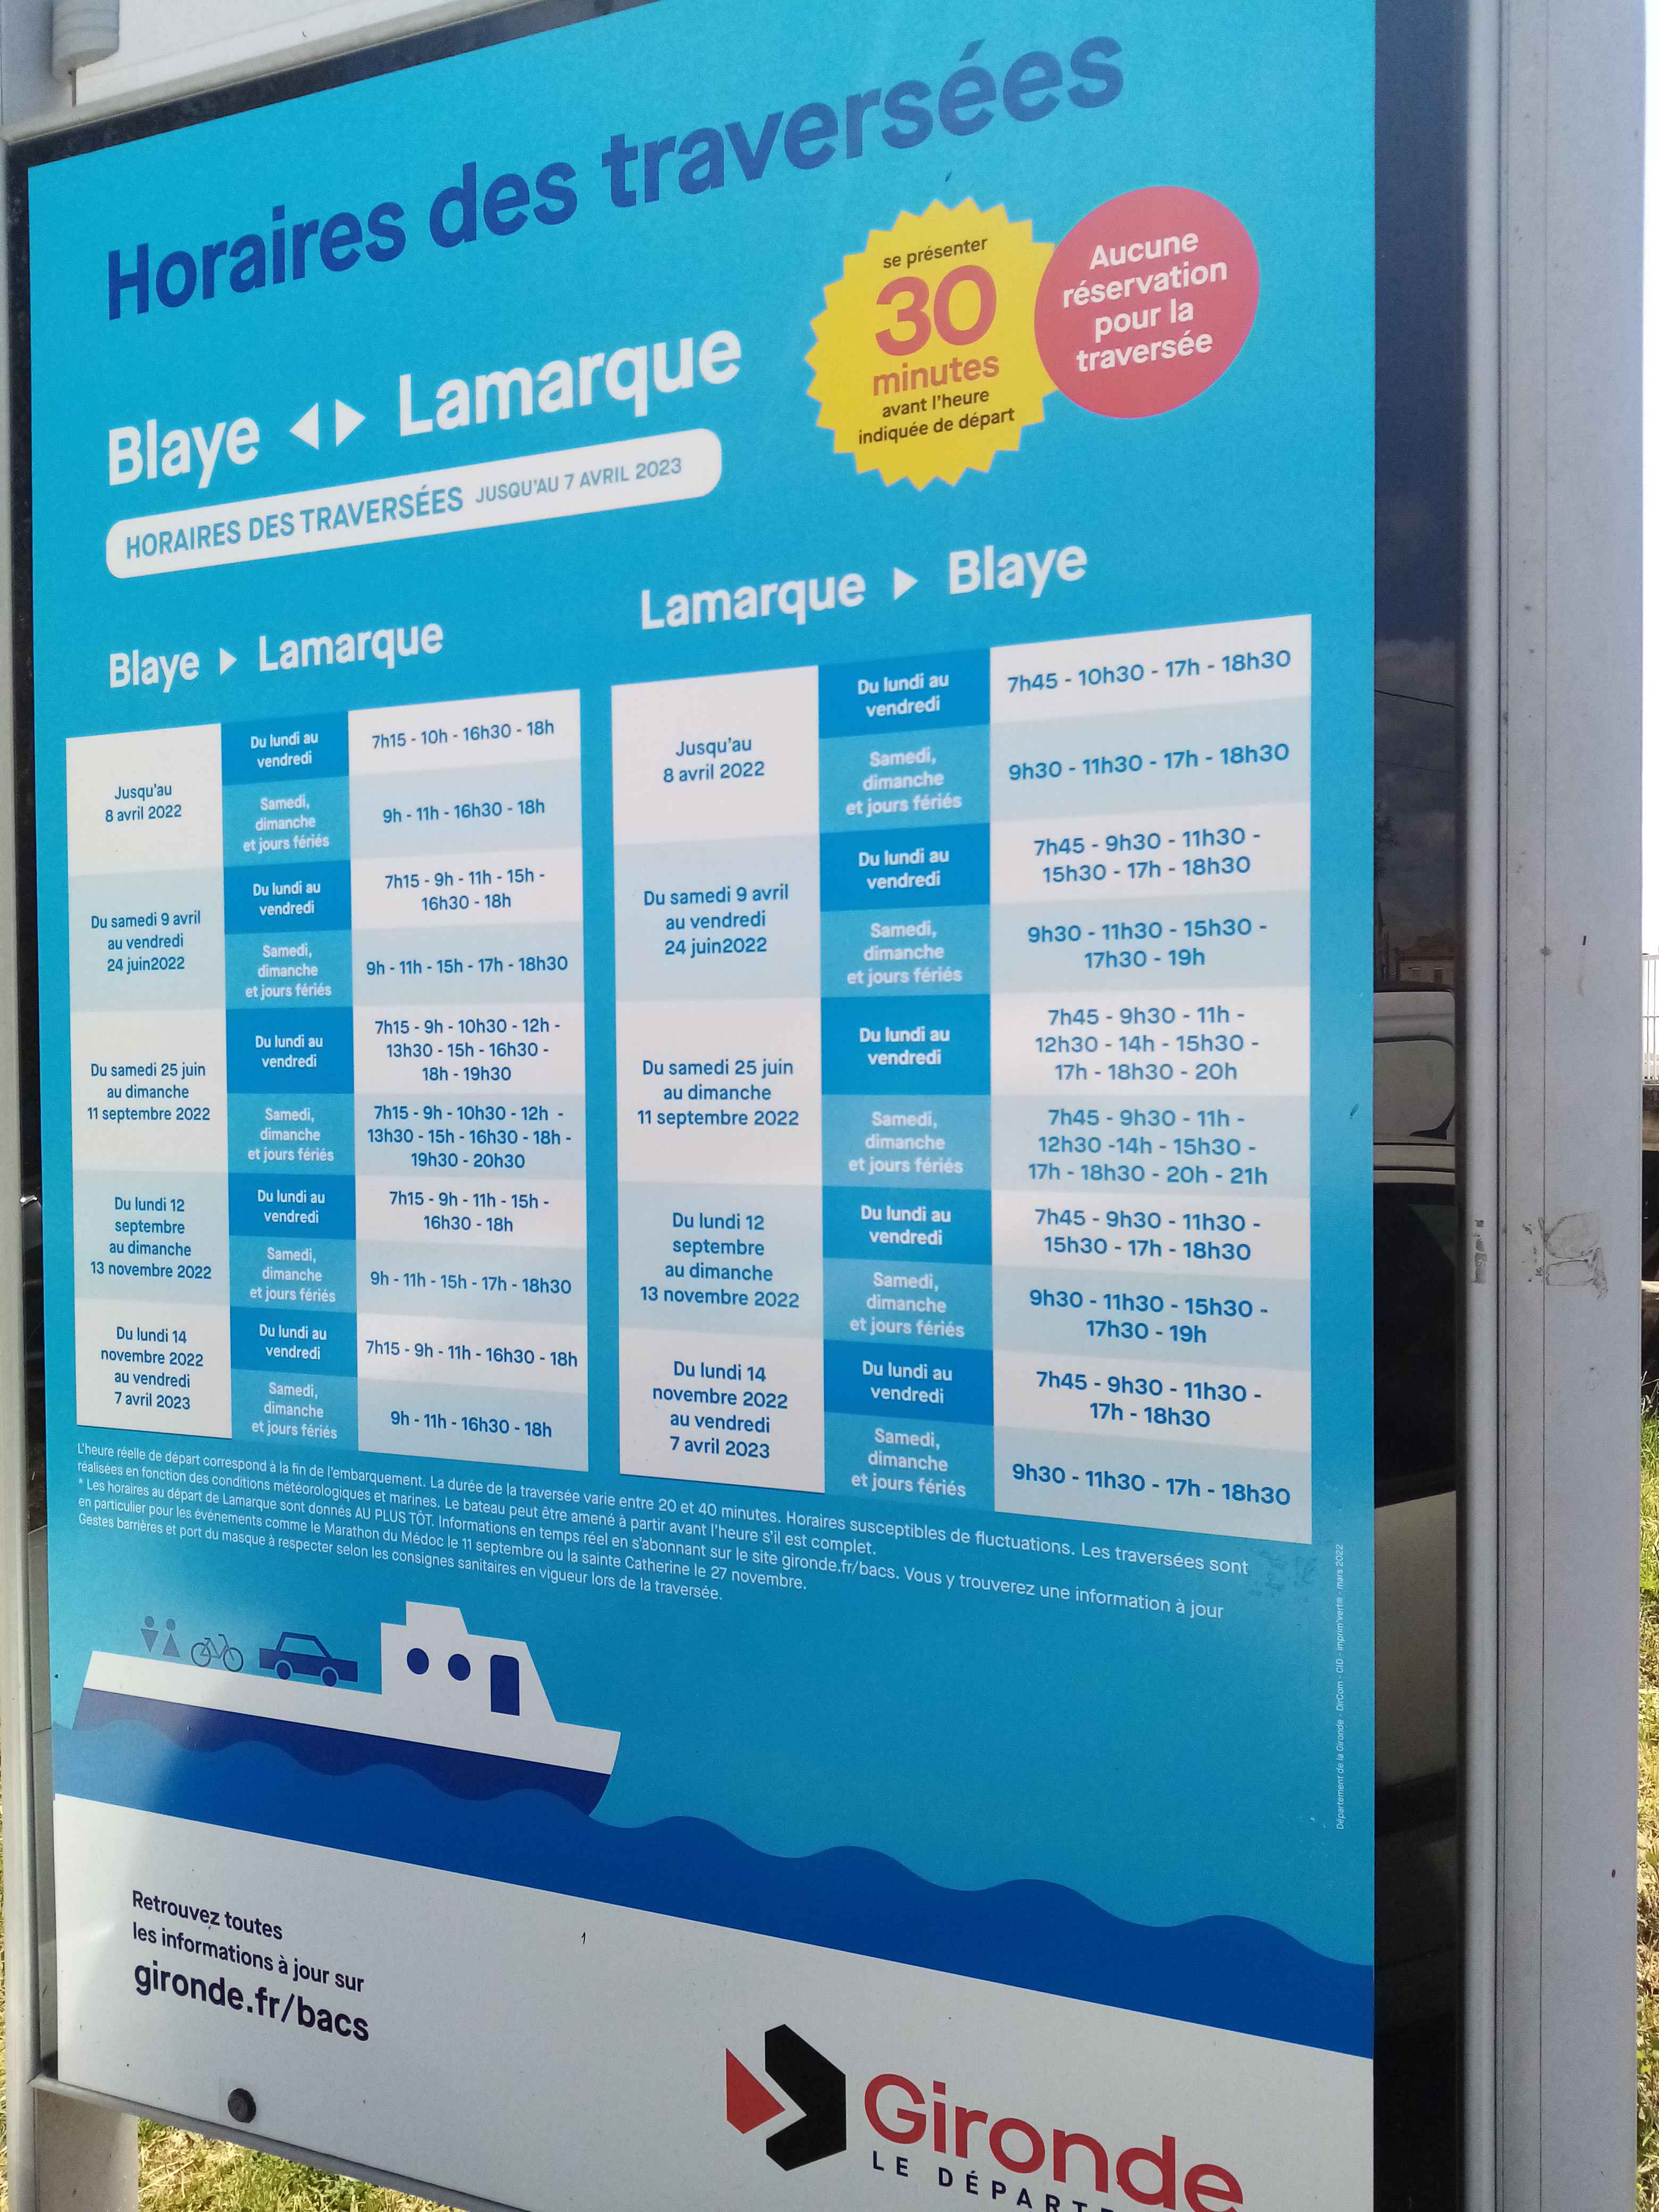 Les horaires et tarifs de la traversée de la Garonne 2022